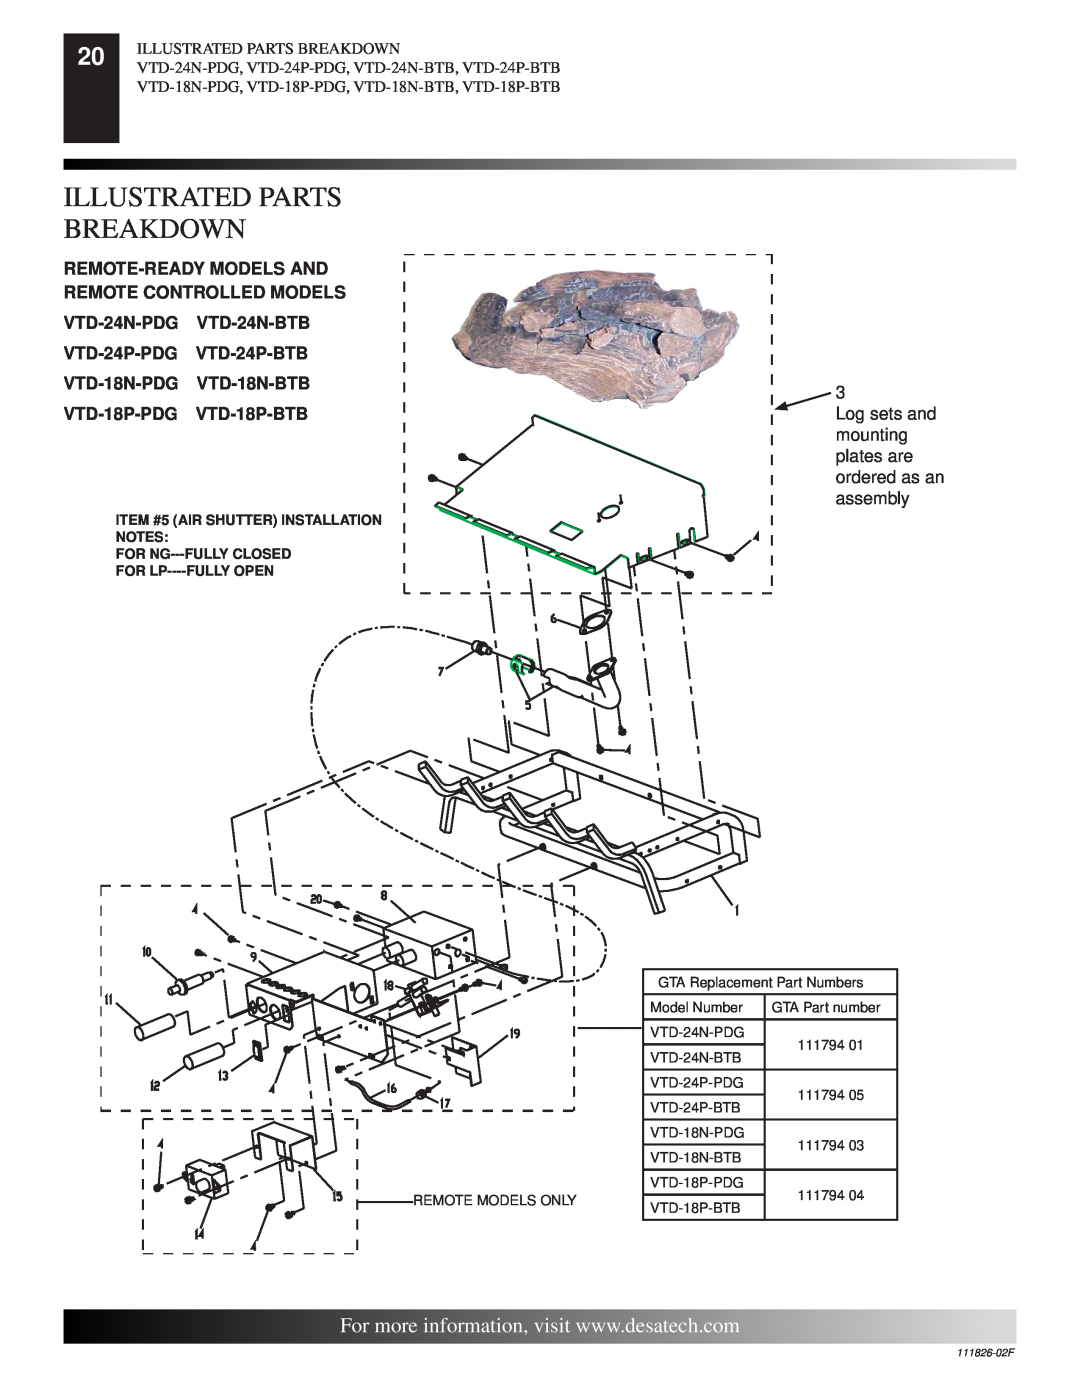 Desa VTD-24P-PDG, VTD-24P-BTB, VTD-18N-PDG Illustrated Parts Breakdown, ITEM #5 AIR SHUTTER INSTALLATION NOTES, 111826-02F 